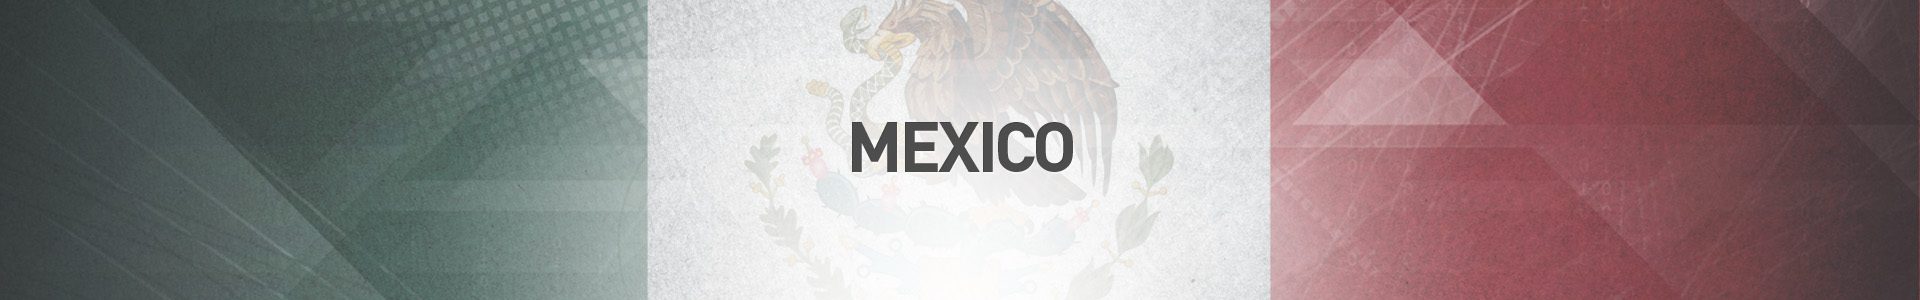 Topo-Pais-Mexico-SBA